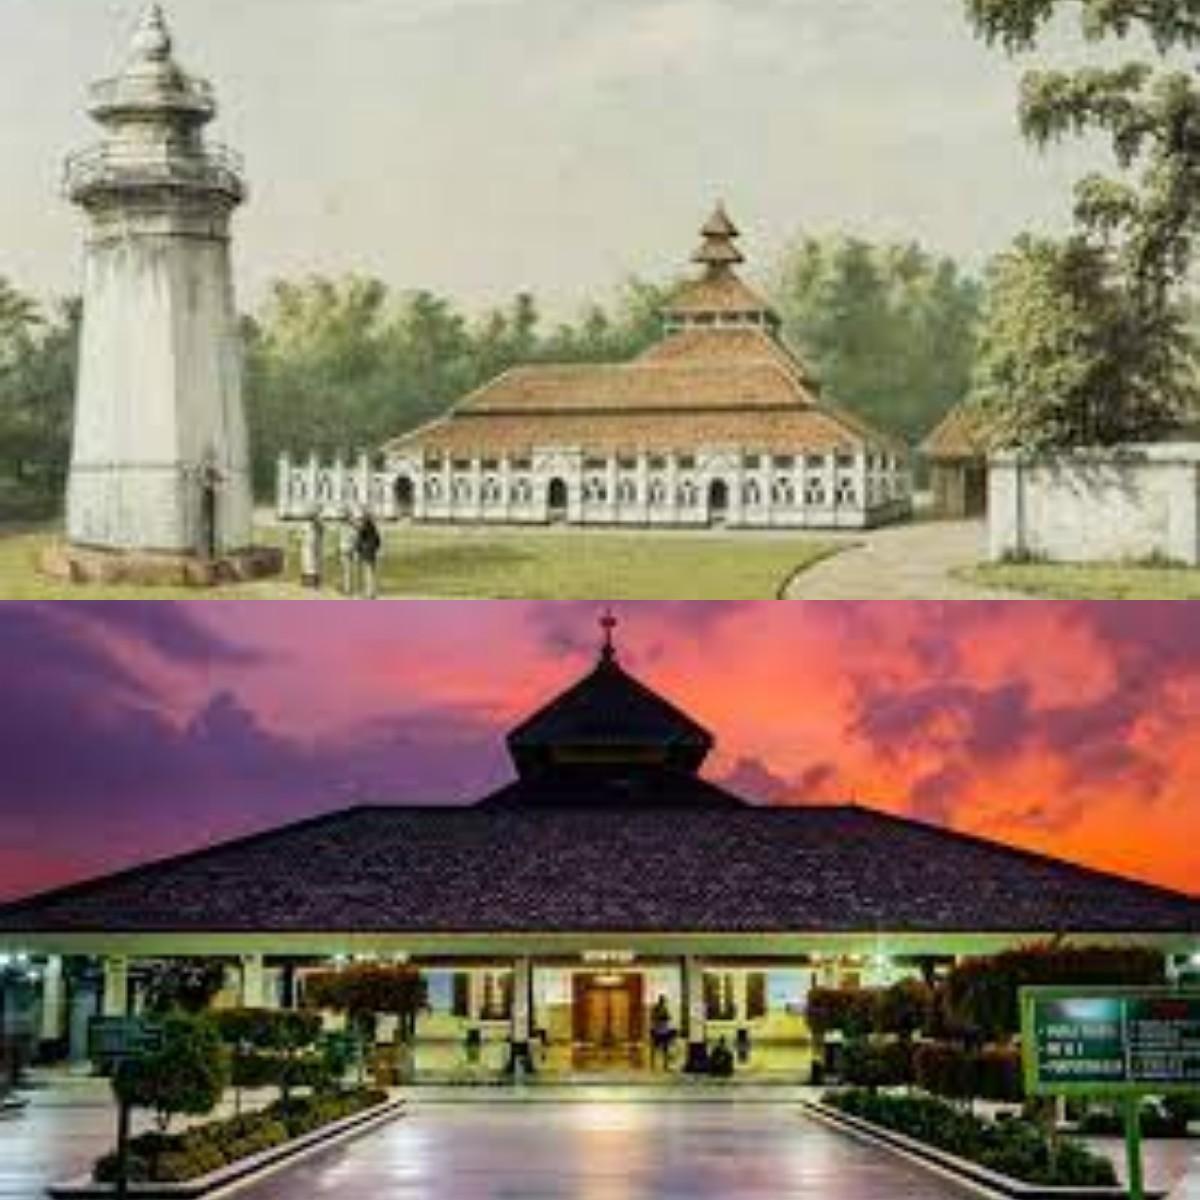 Mengenal Sejarah Kerajaan Pertma di Pulau Jawa: Kerajaan Demak 